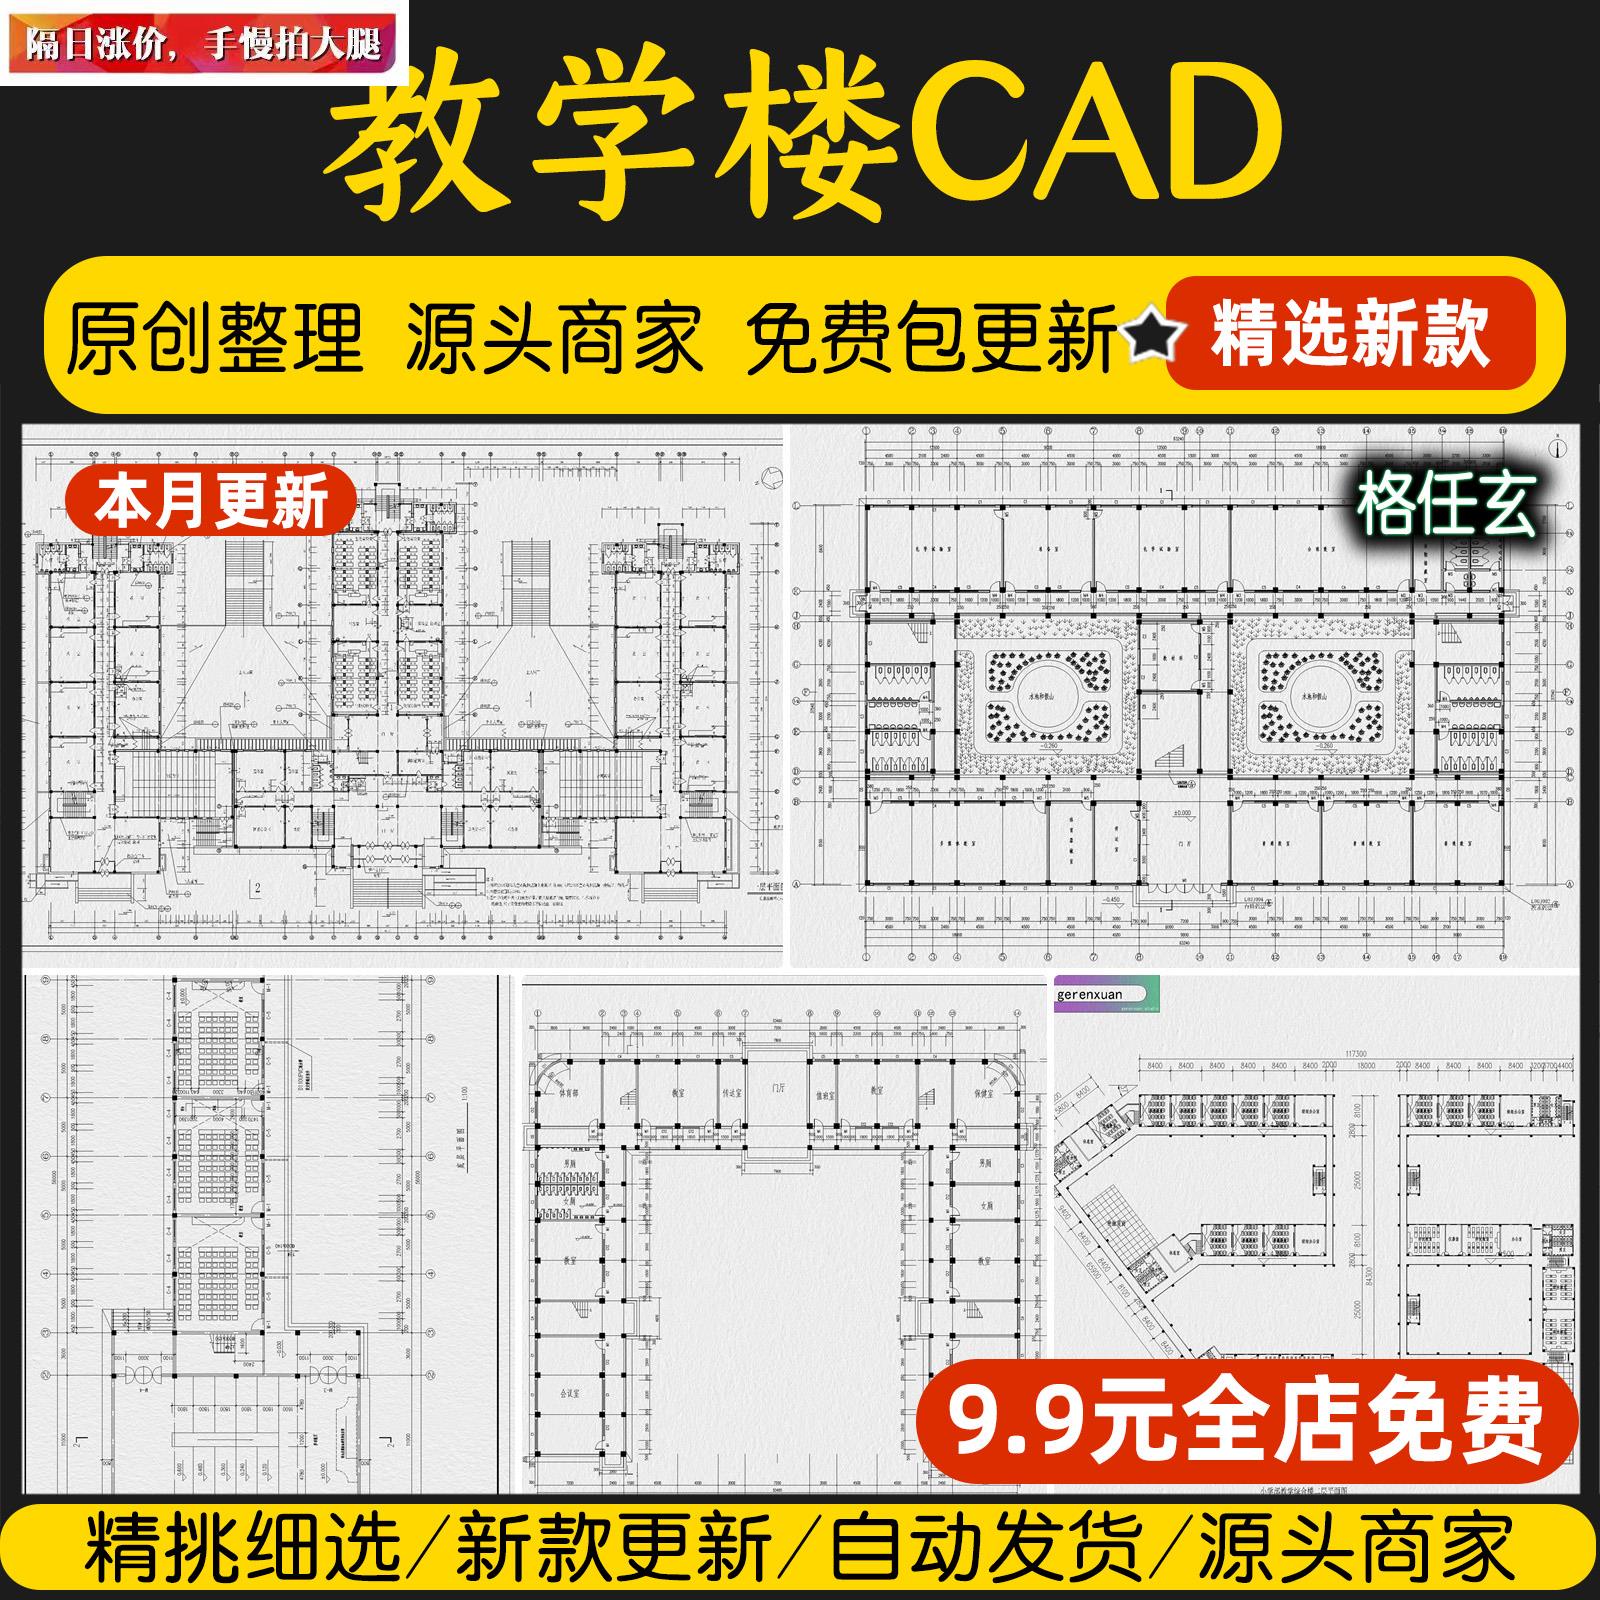 教学楼建筑学校校园综合楼设计方案布局实验楼CAD平面图CAD施工图